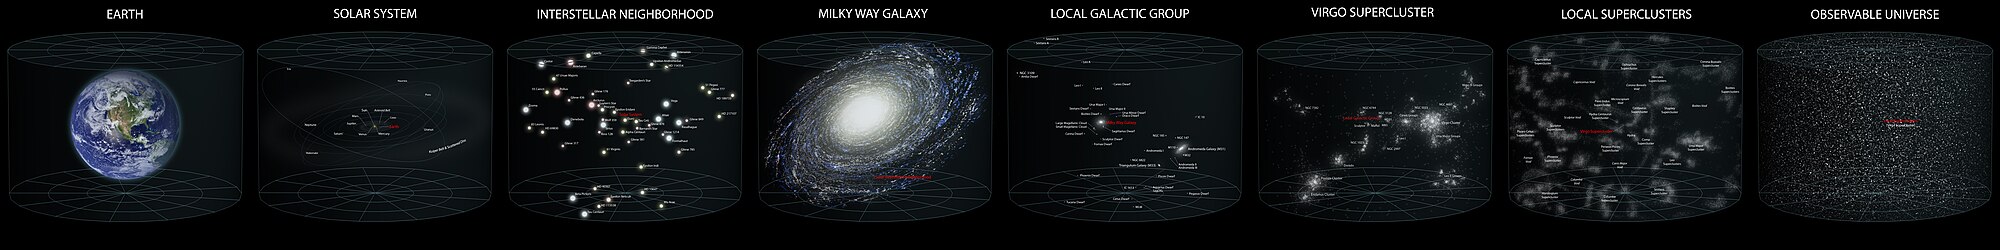 လေ့လာနိုင်သော စကြဝဠာမှ မိမိတို့၏တည်နေရာ (ပုံကြီးကြည့်ရန် ကလစ်ပါ)